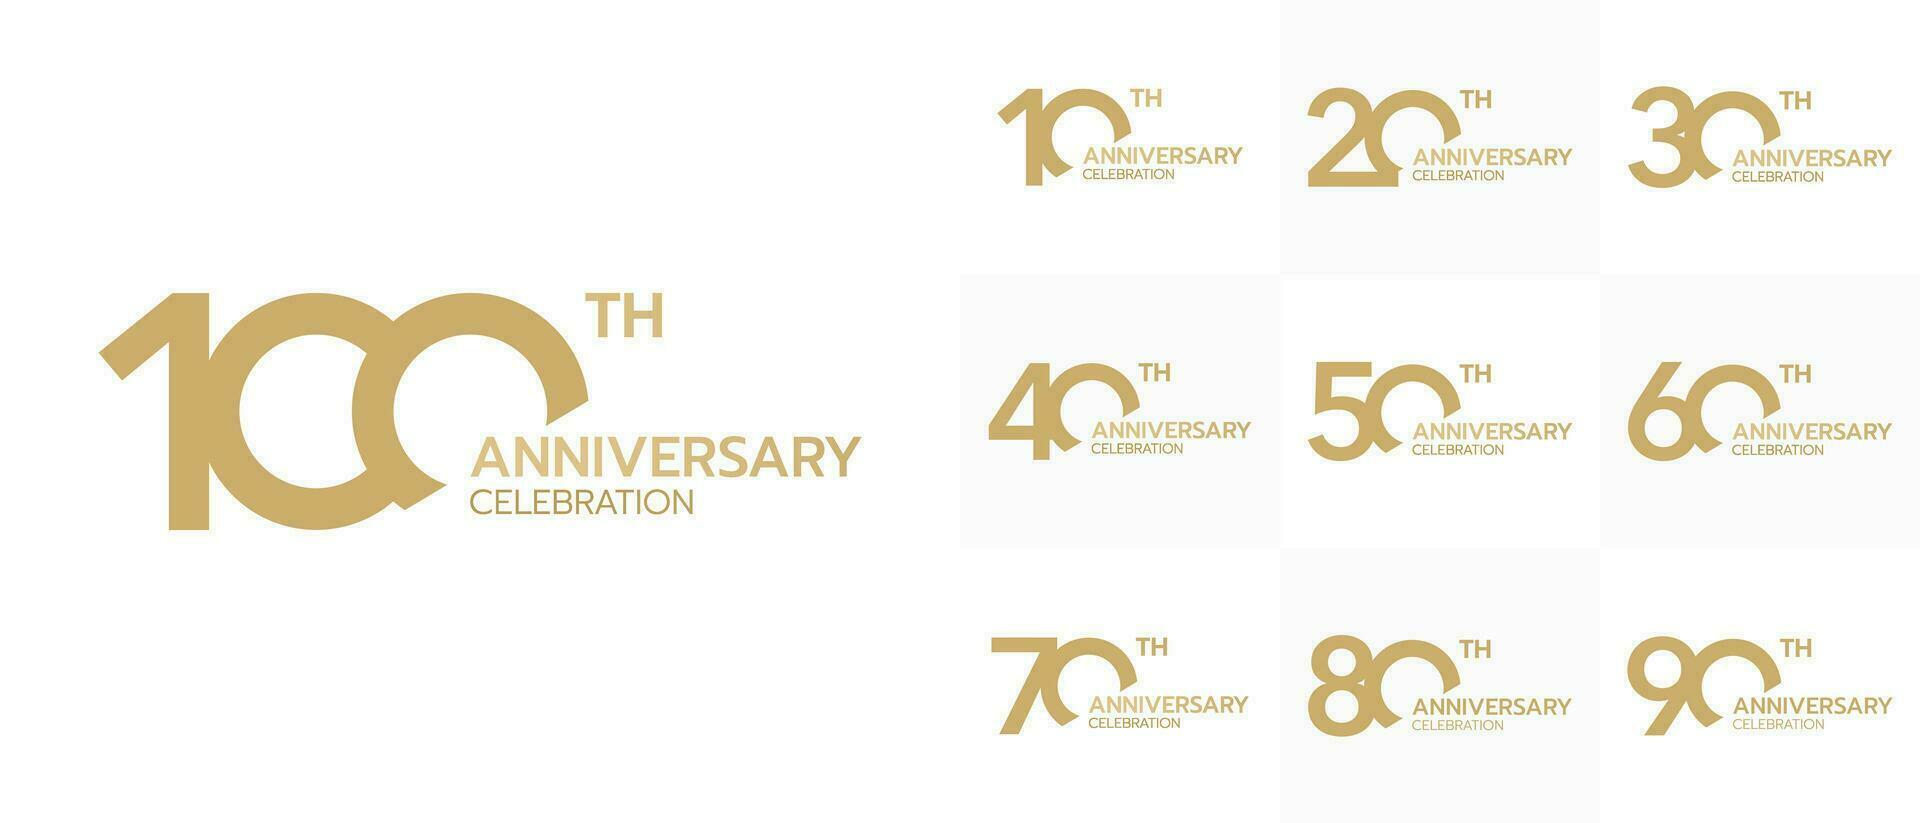 collezione di il anniversario celebrazione d'oro logo stile. celebrazione azienda evento. vettore illustrazione.